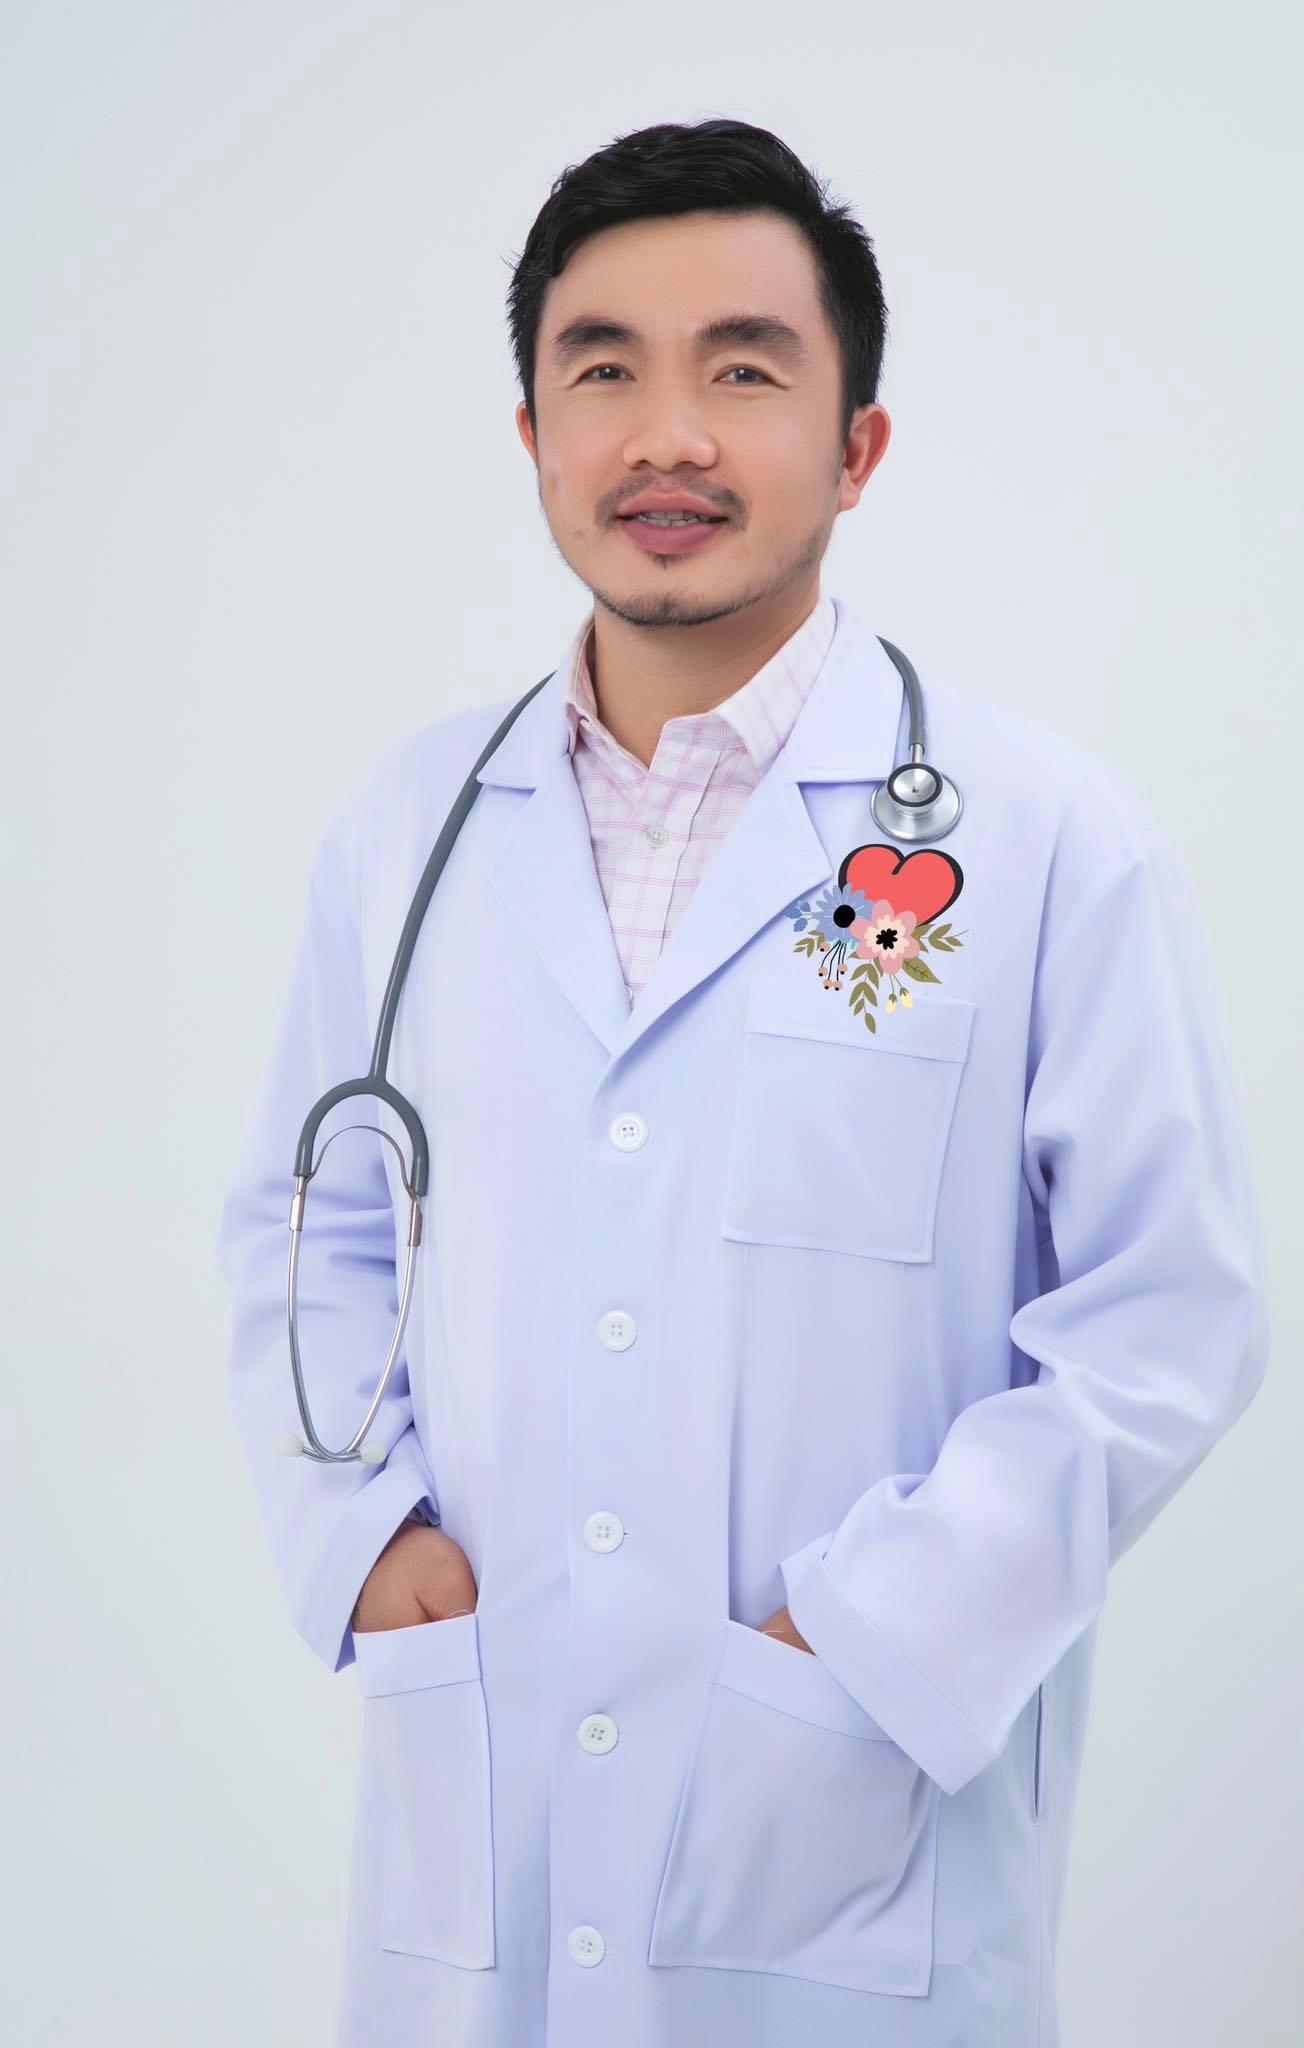 Thạc sỹ, Bác sĩ CK1 NGUYỄN ĐỨC LONG